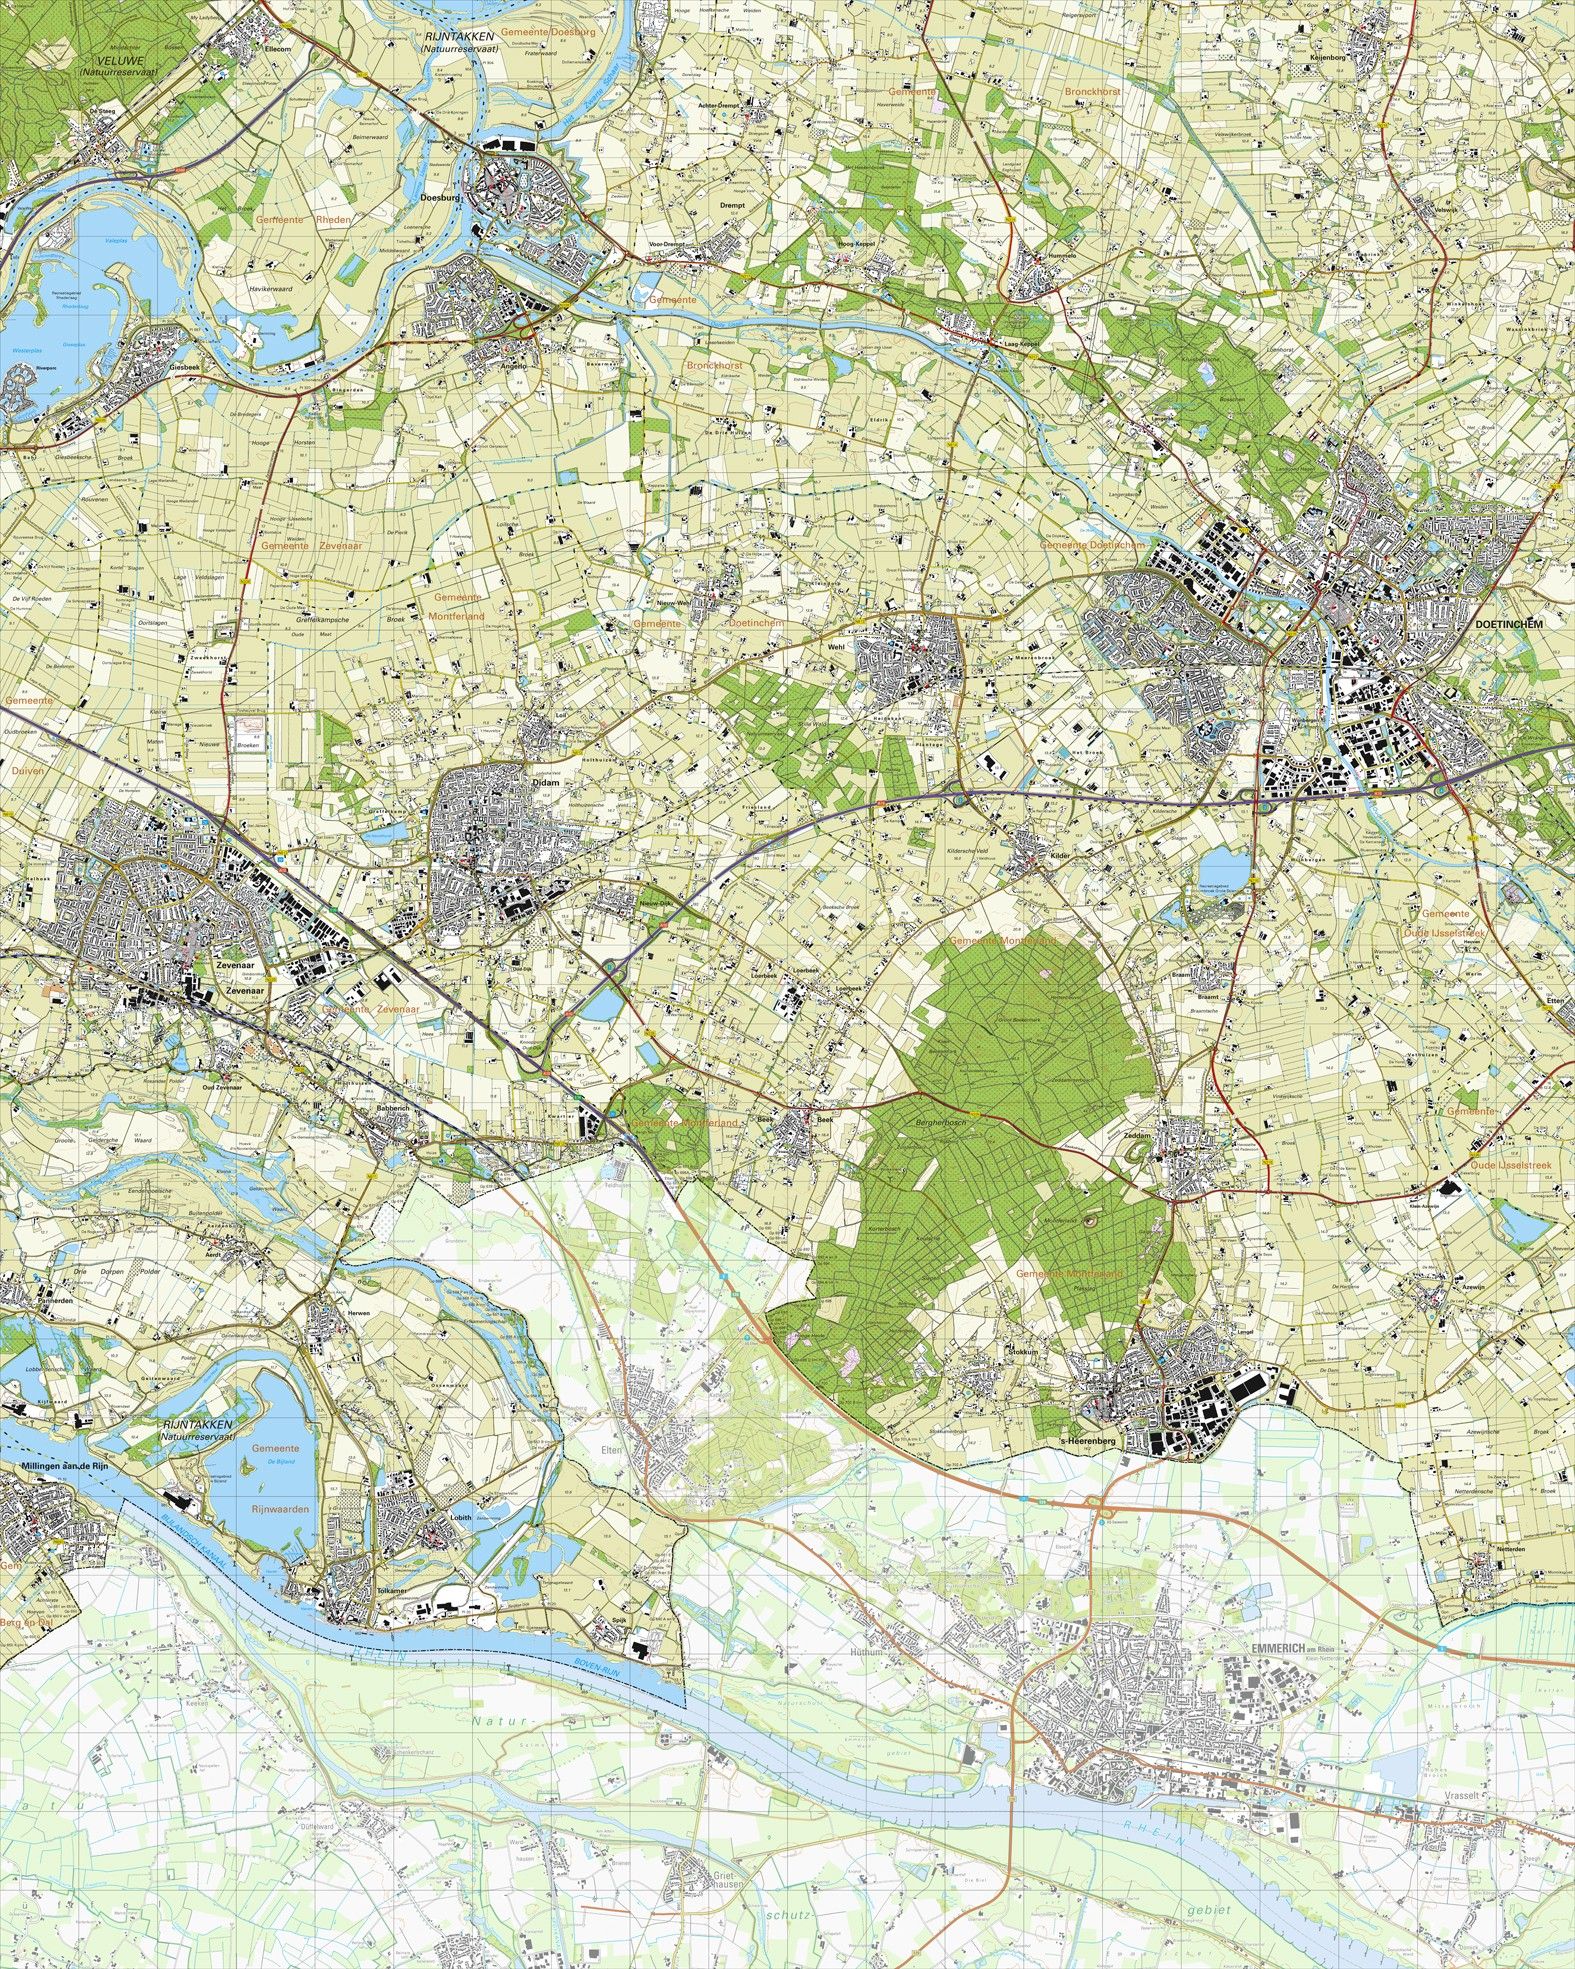 Koop Topografische kaart schaal 1:25.000 (Doetinchem, Zevenaar, Didam, 's-Heerenberg, Zeddam) voordelig online COMMEE